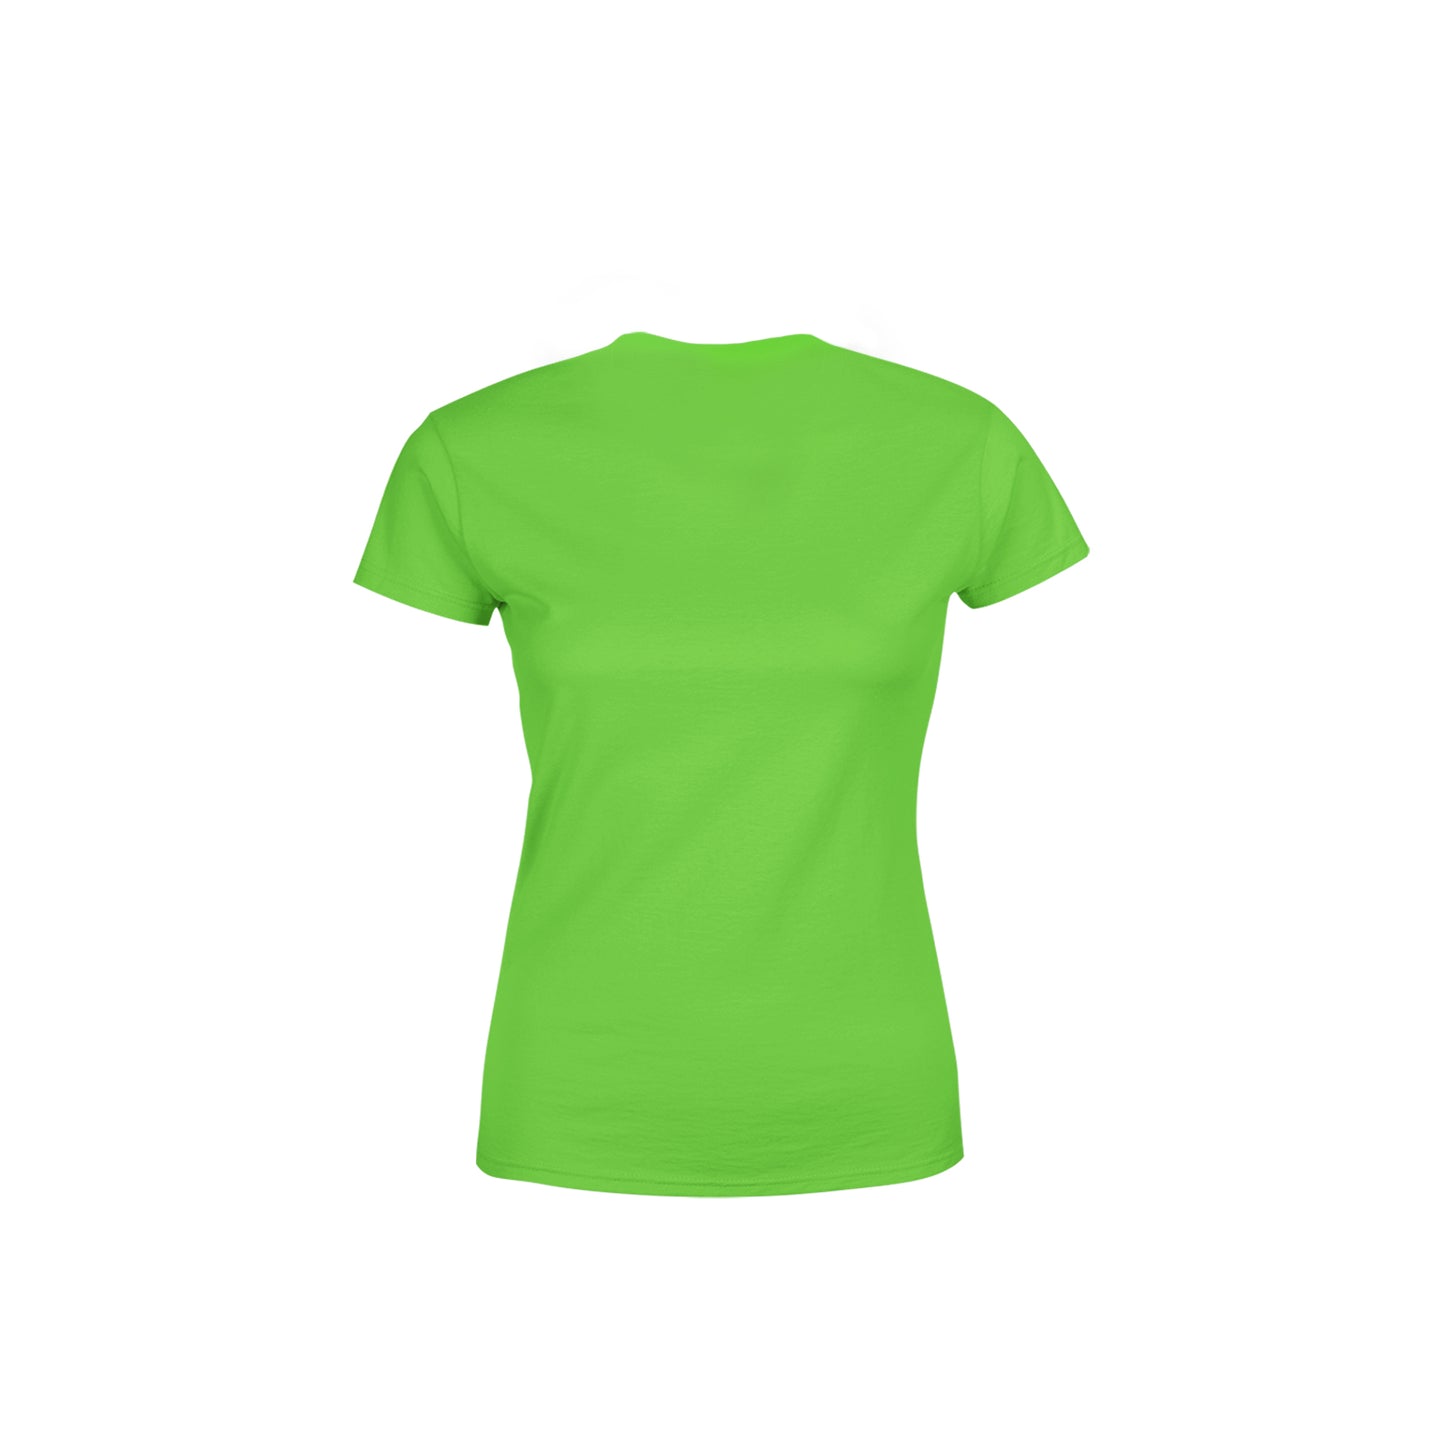 59 Number Women's T-Shirt (Liril Green)